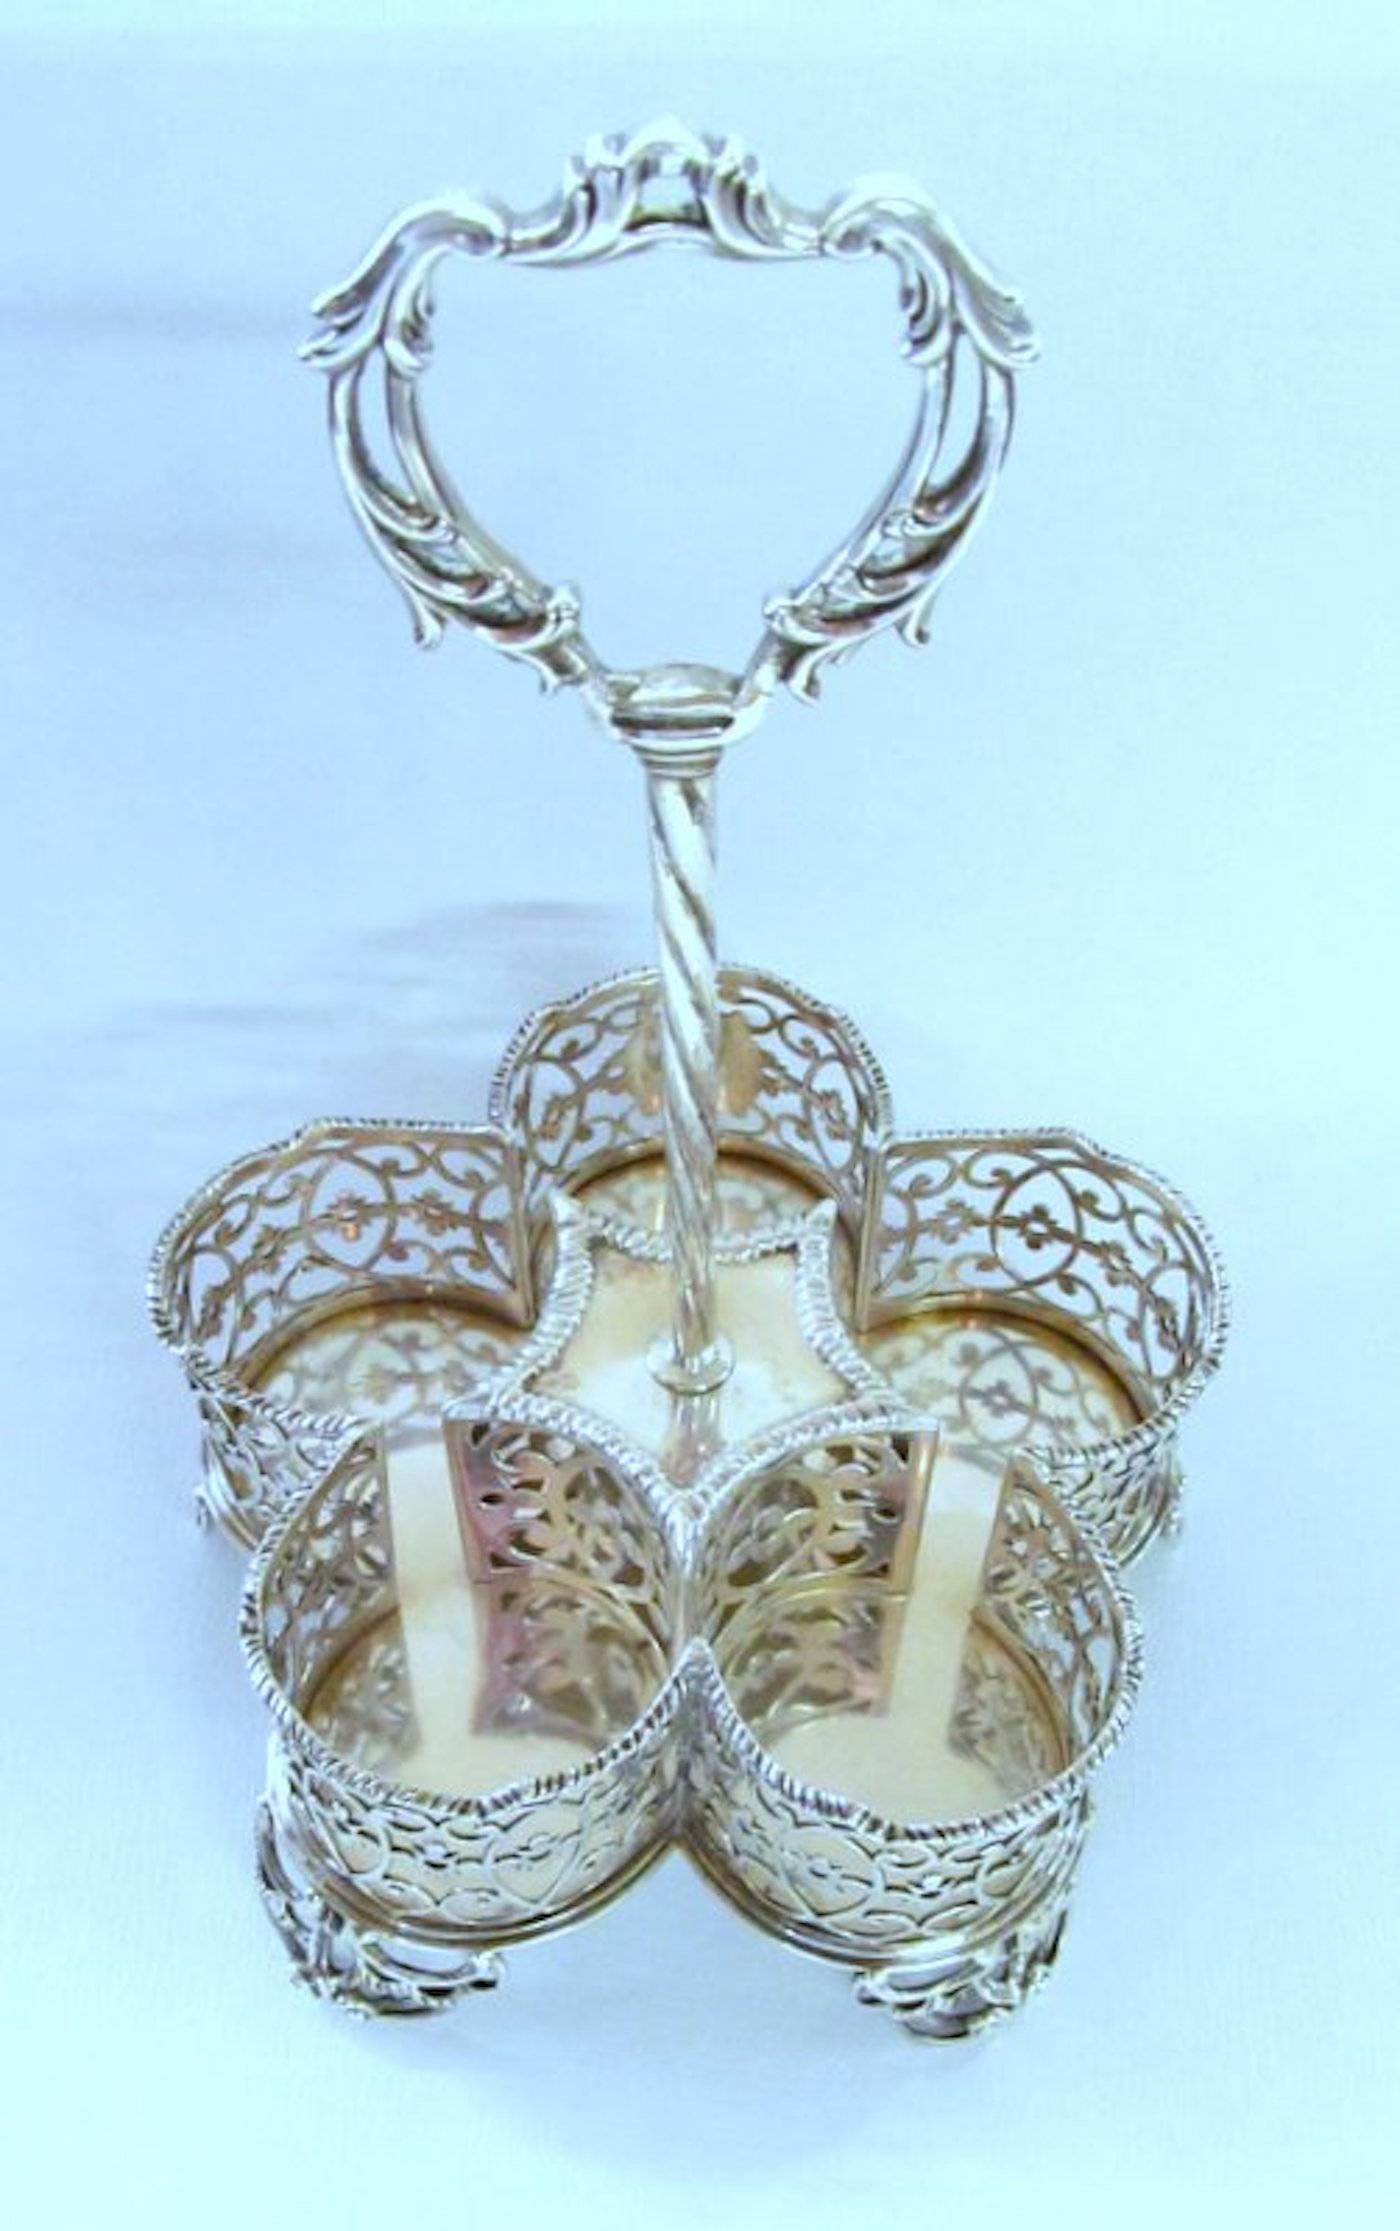 George III English Sterling Silver Five-Bottle Cut Crystal Warwick Cruet Set 1